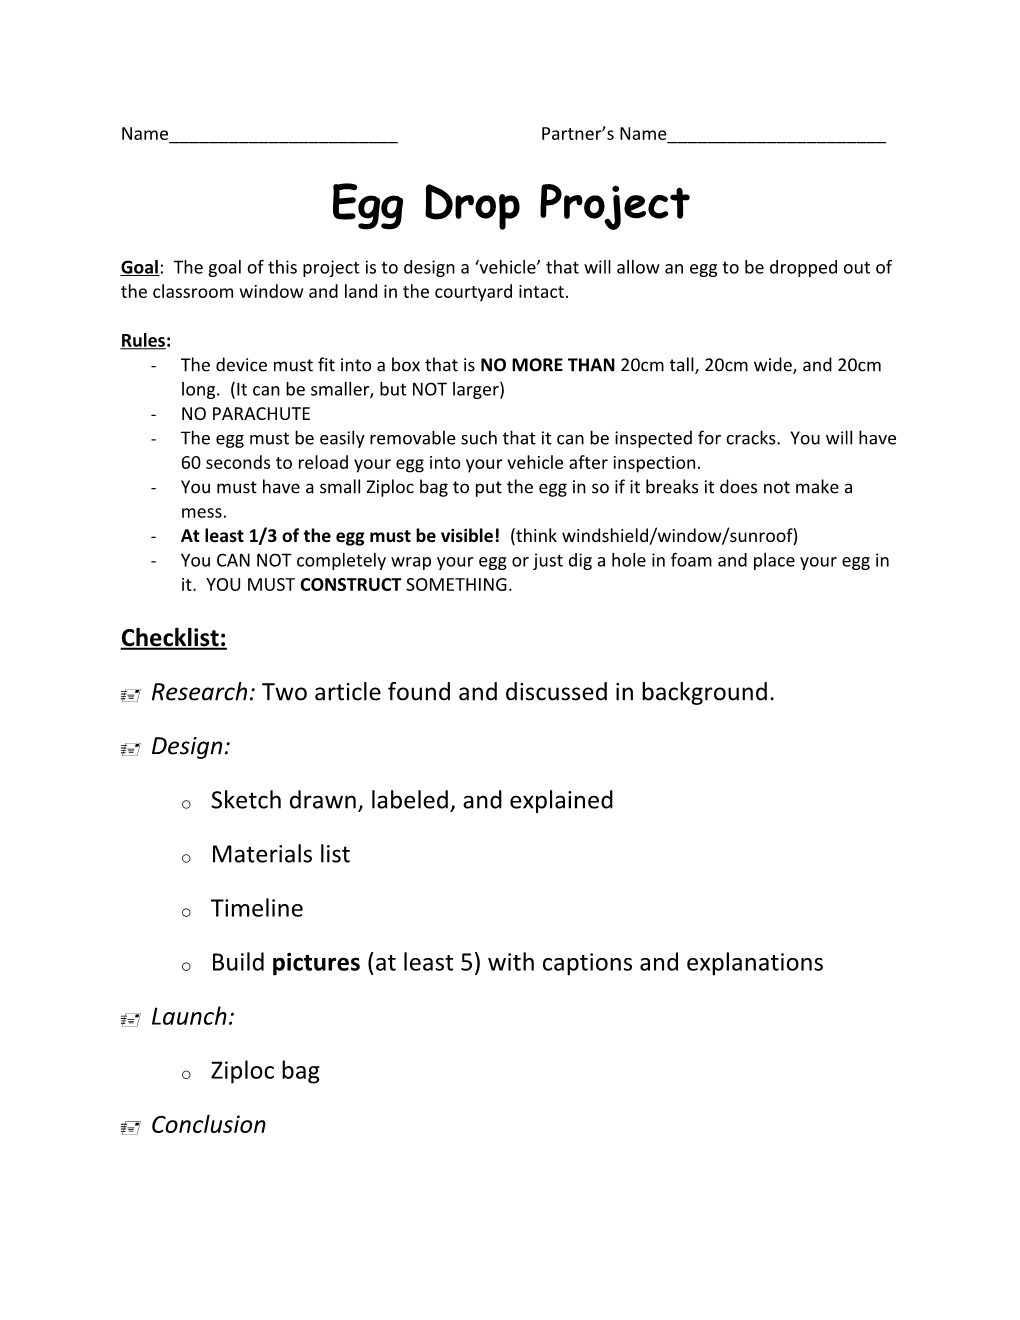 Egg Drop Project s1